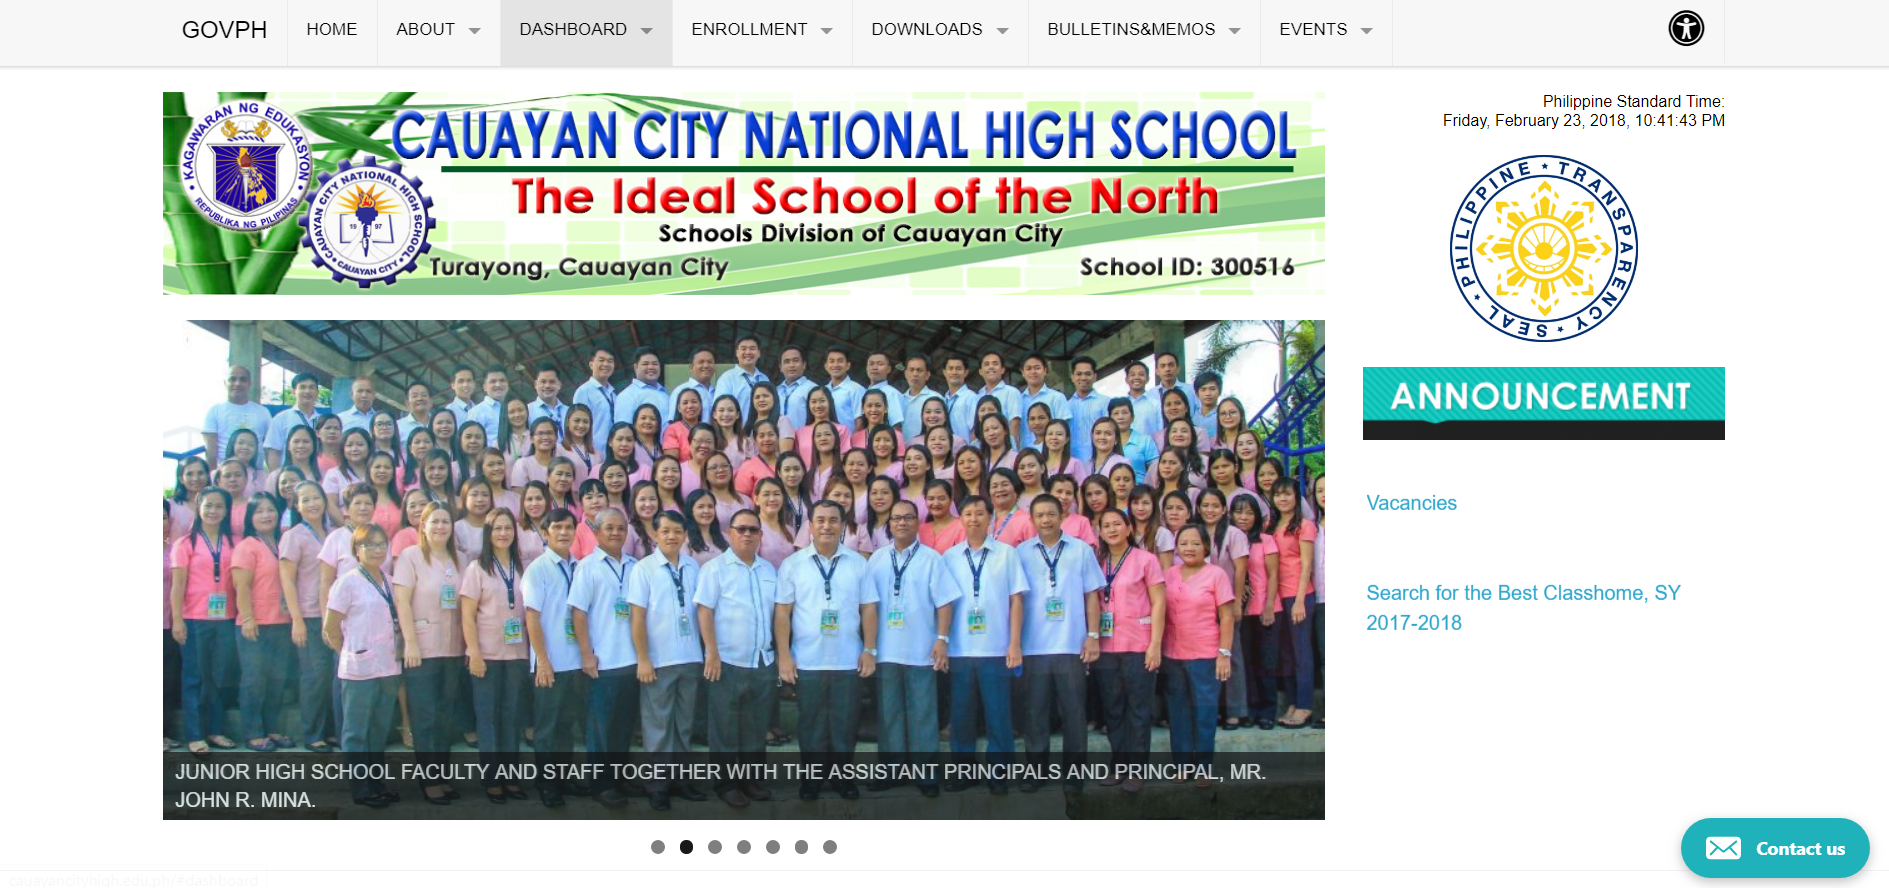 Cauayan City National High School